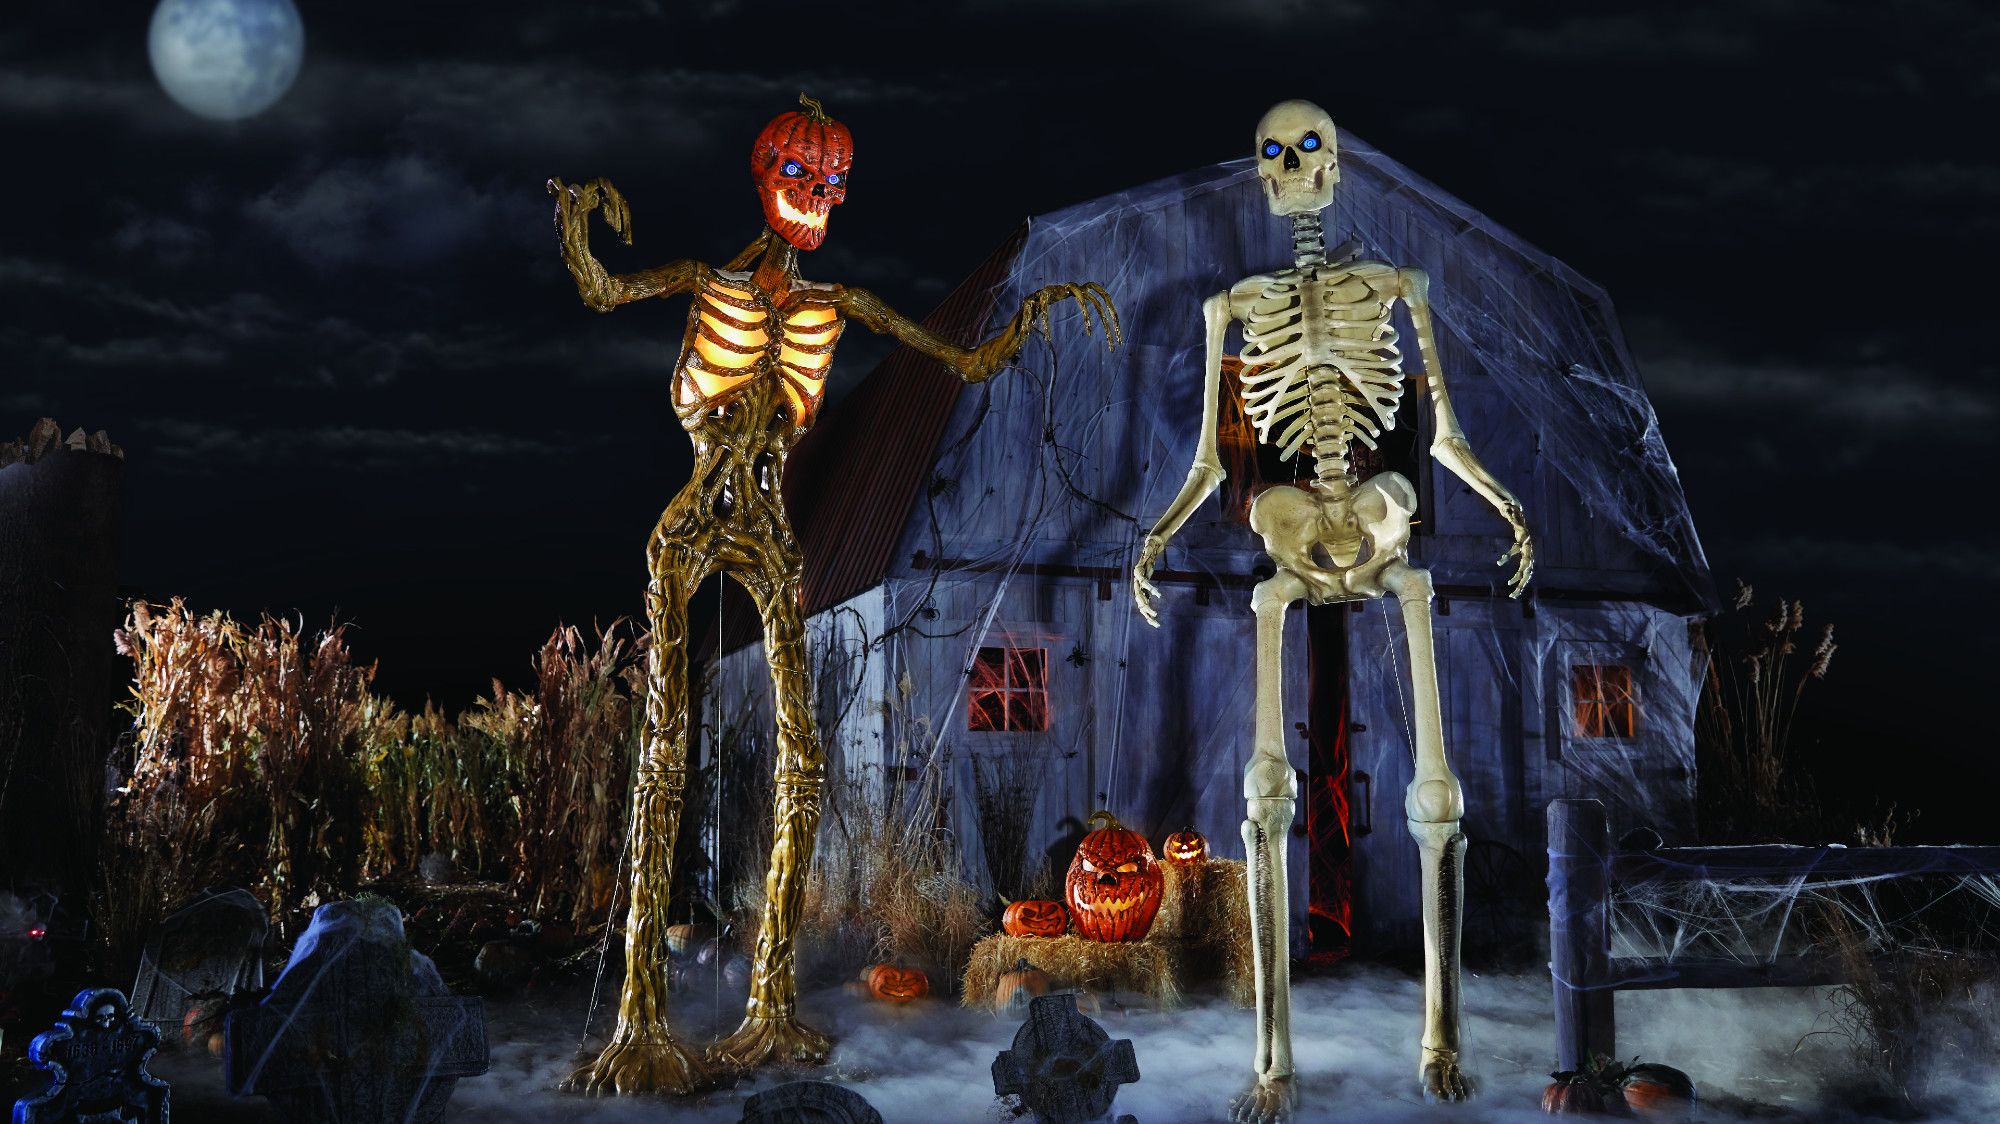 How Home Depot’s Huge Skeleton Became Halloween’s Hottest Decoration